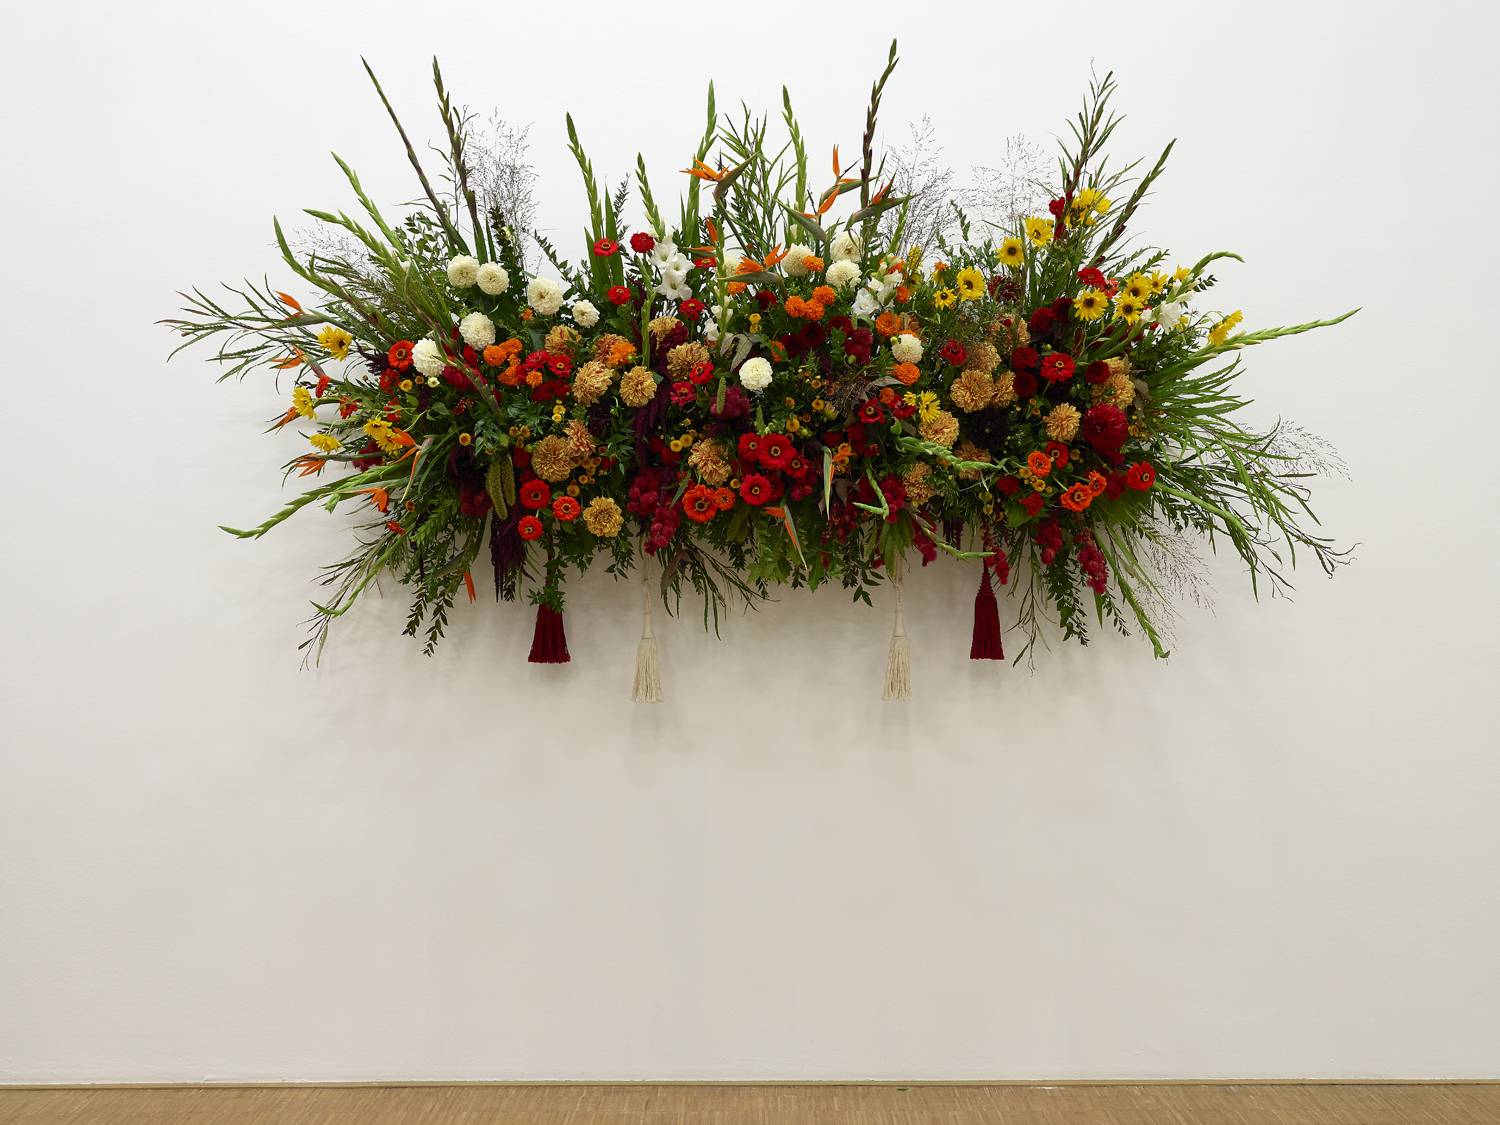 Kapwani Kiwanga, “Flowers for Africa” (2013-en cours). Vue de l’exposition “Prix Marcel Duchamp 2020”, Centre Pompidou, Paris 2020-2021. Copyright ADAGP. Courtesy the artist and galerie Poggi, Paris